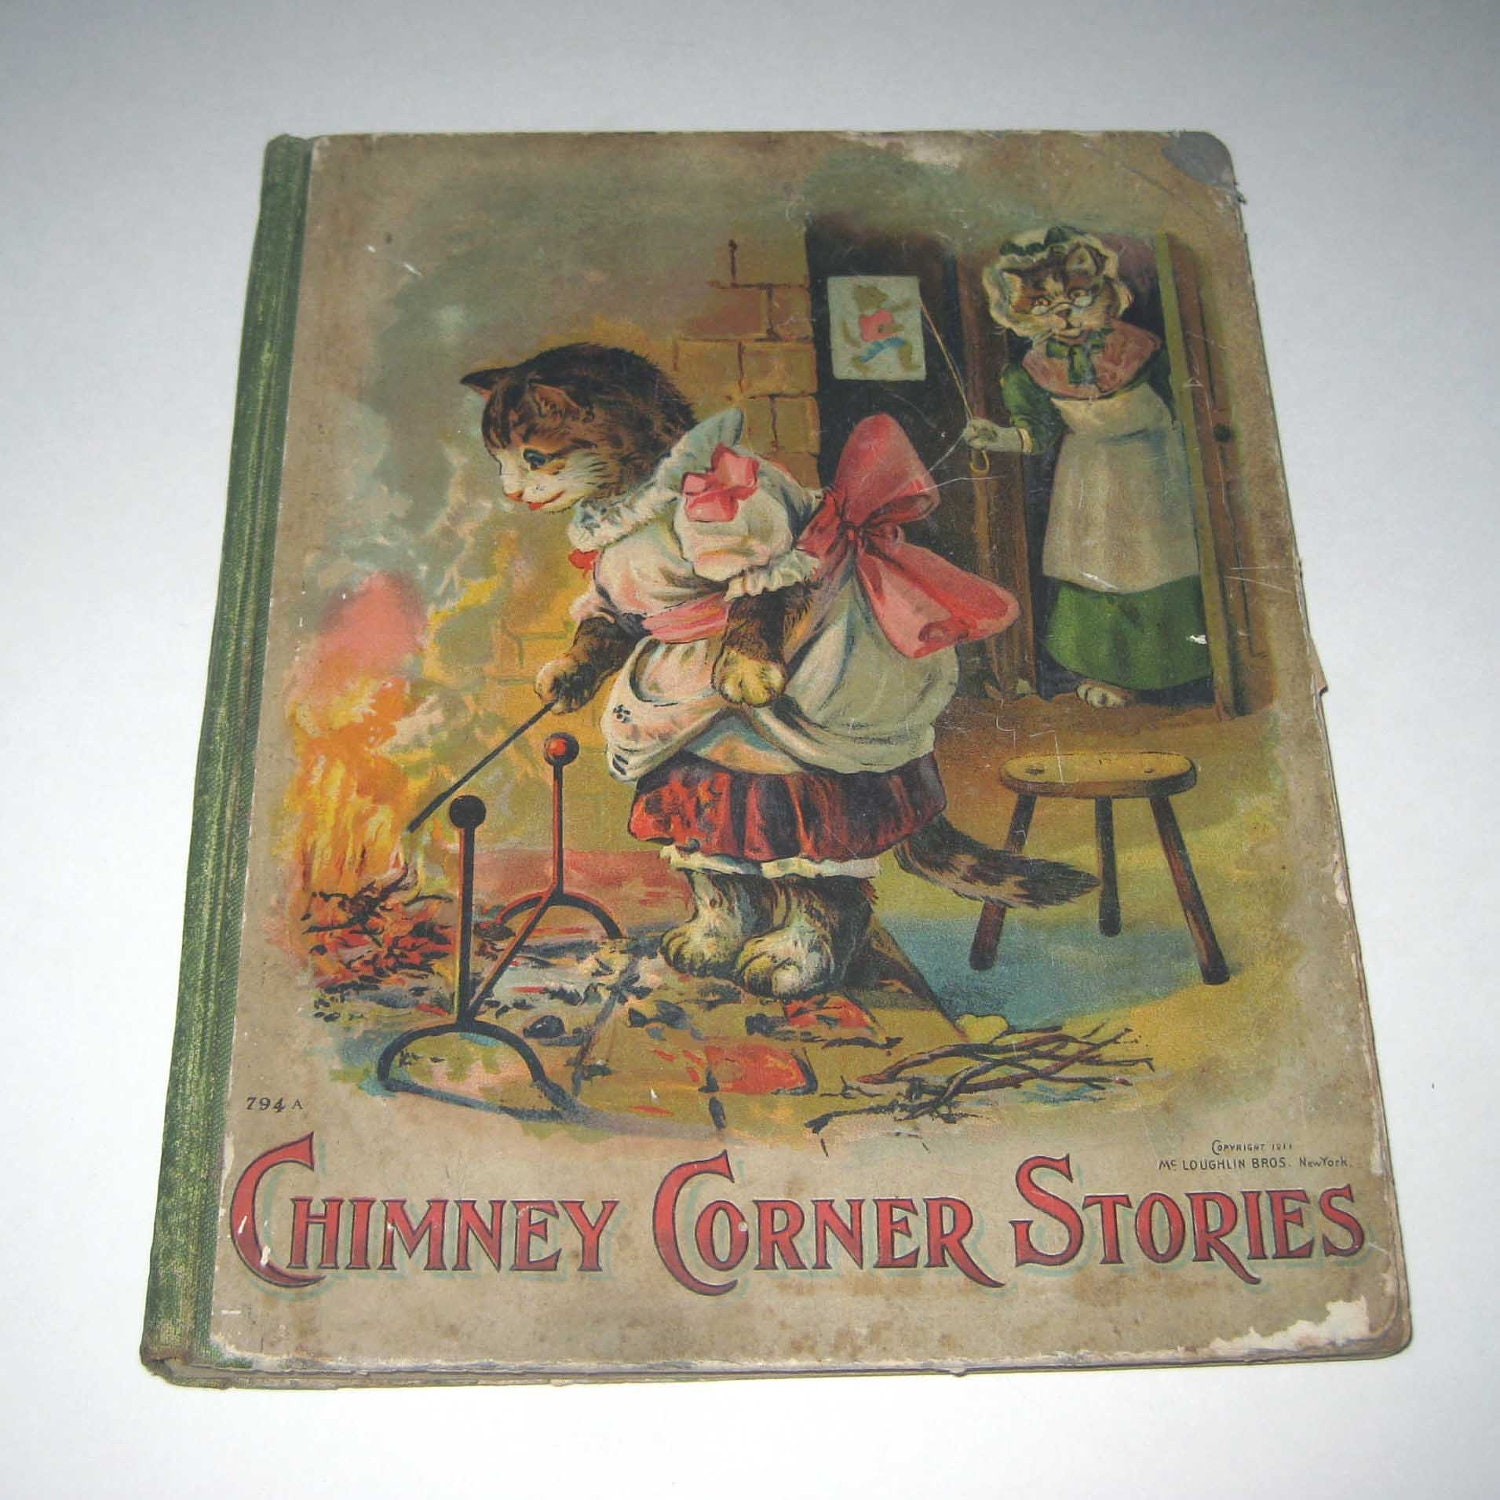 Chimney Corner Stories Vintage Late 1890s Children's Victorian Book